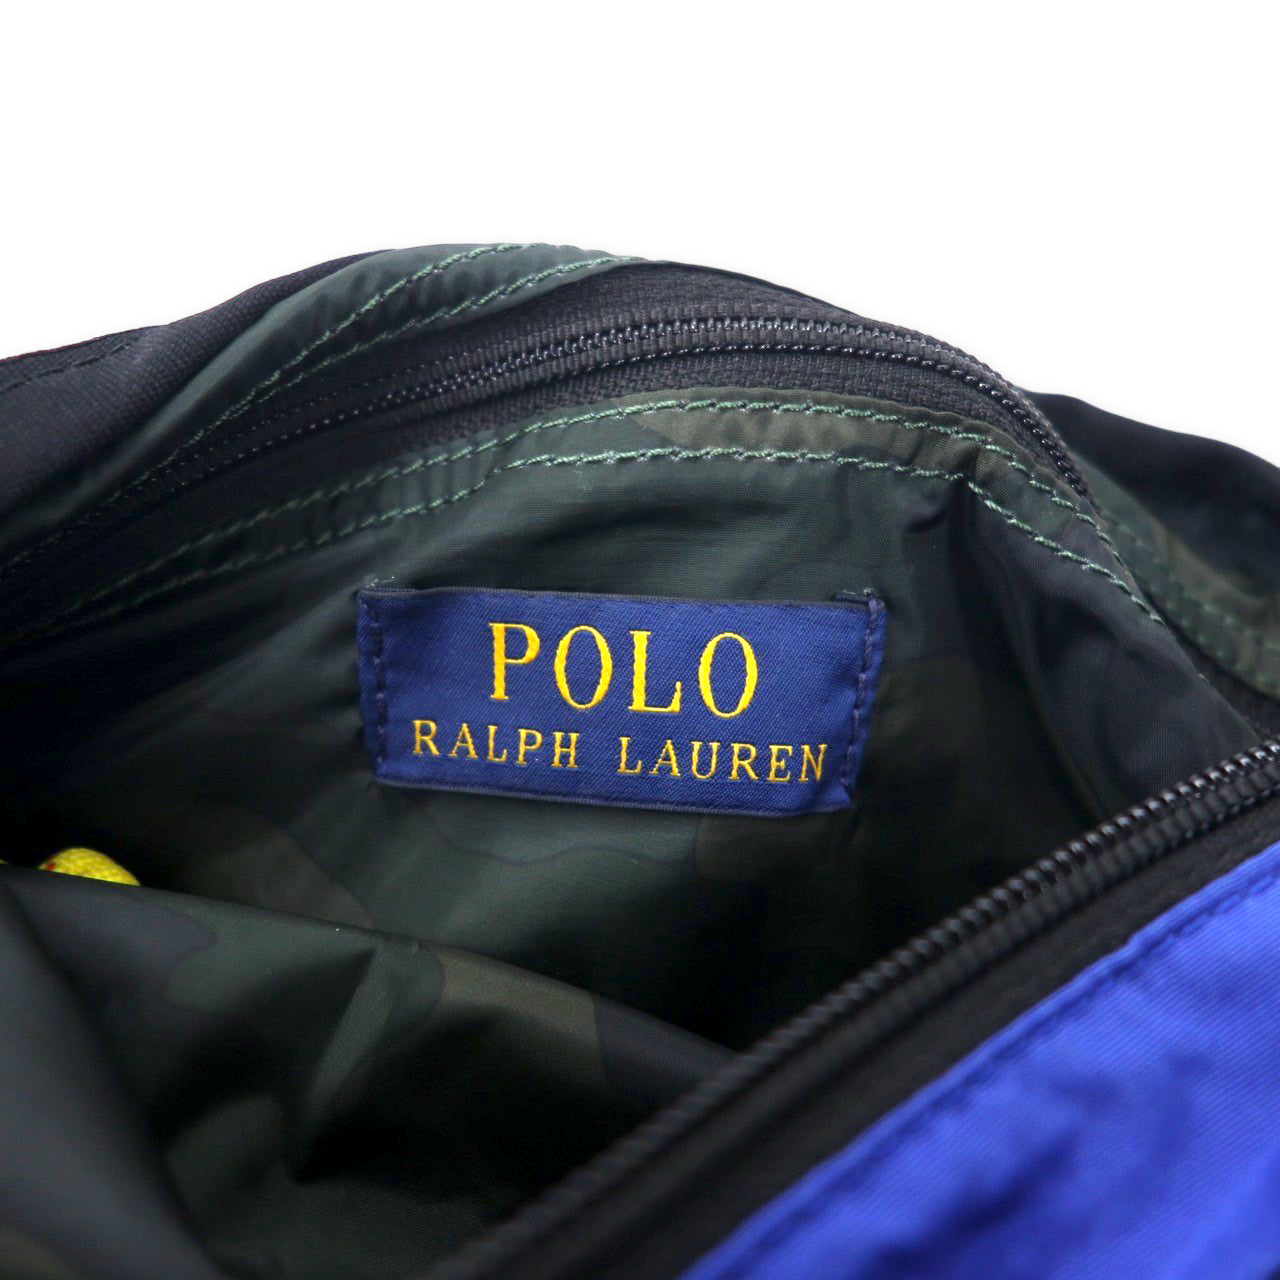 POLO RALPH LAUREN Light Wait Mountain Cross Body Bag Blue Cotton 